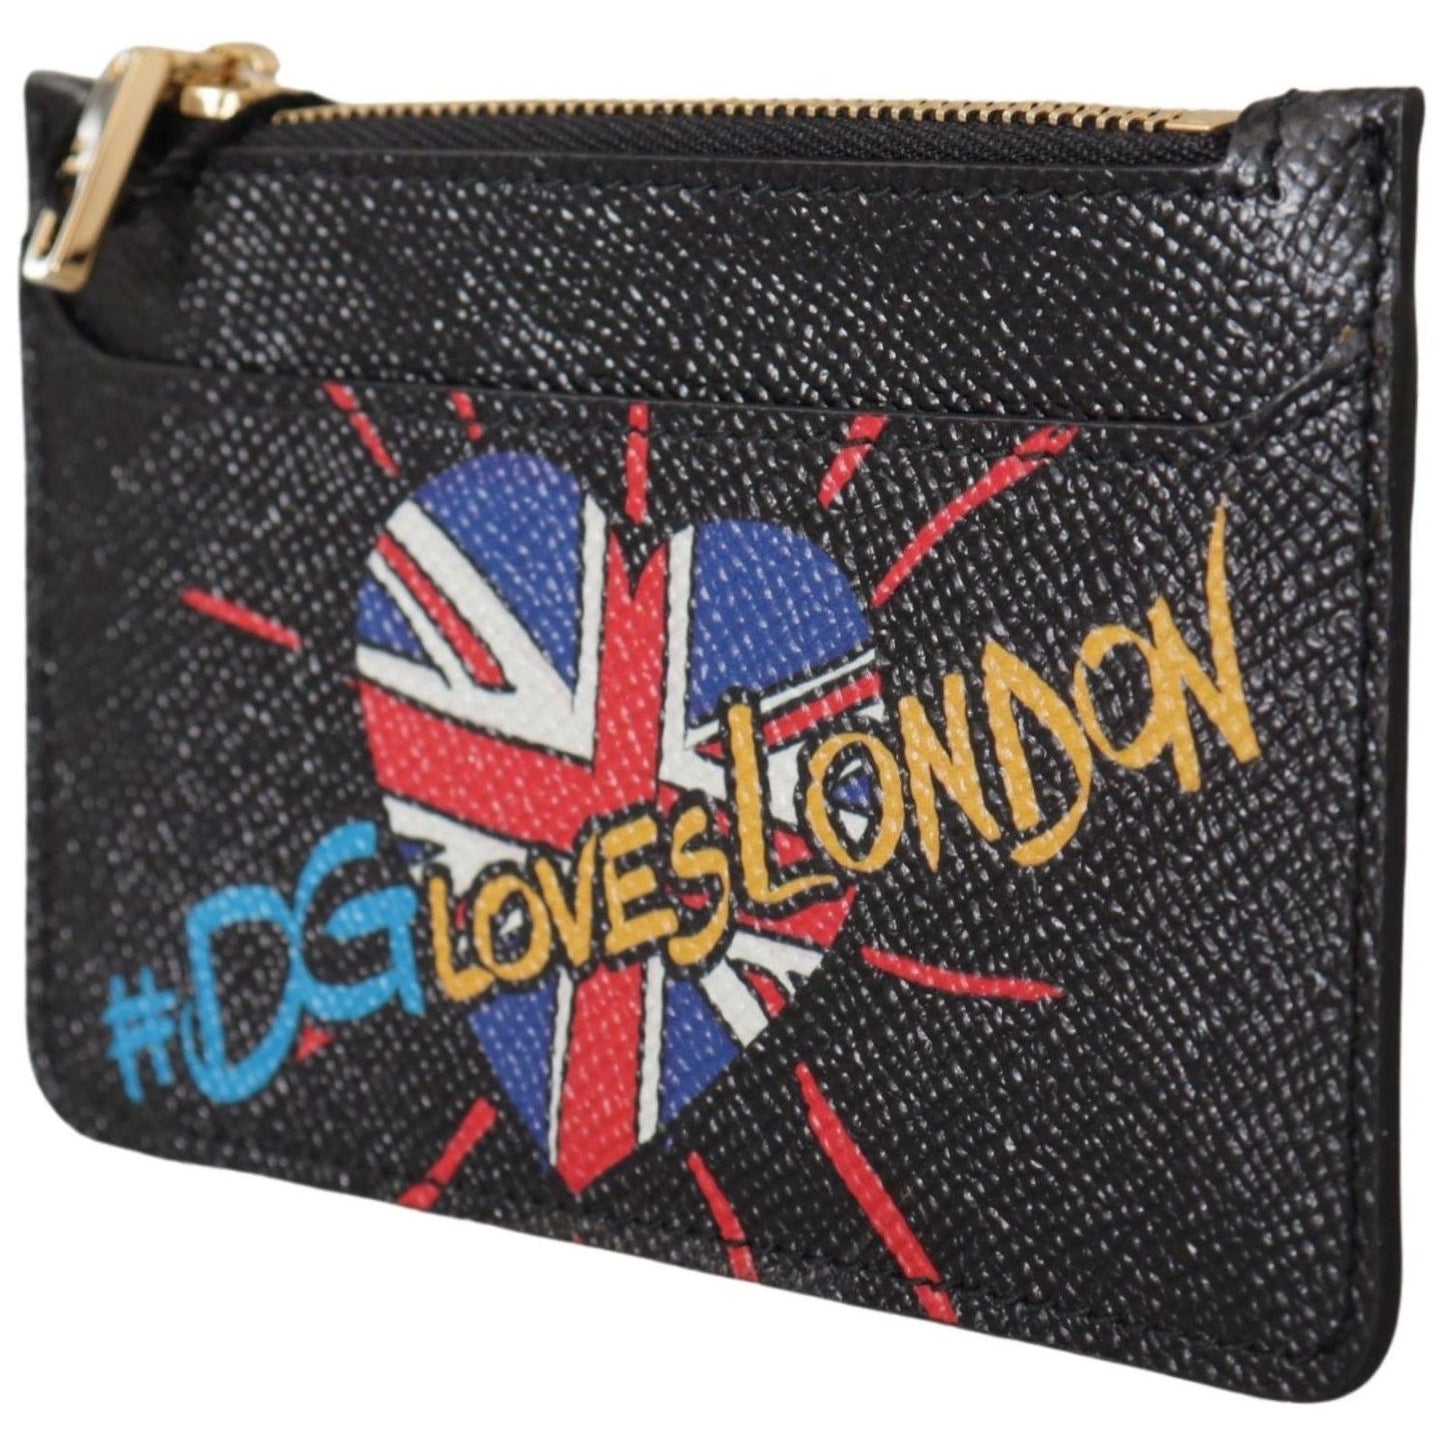 Dolce & GabbanaElegant Leather Coin Wallet with Zip ClosureMcRichard Designer Brands£259.00